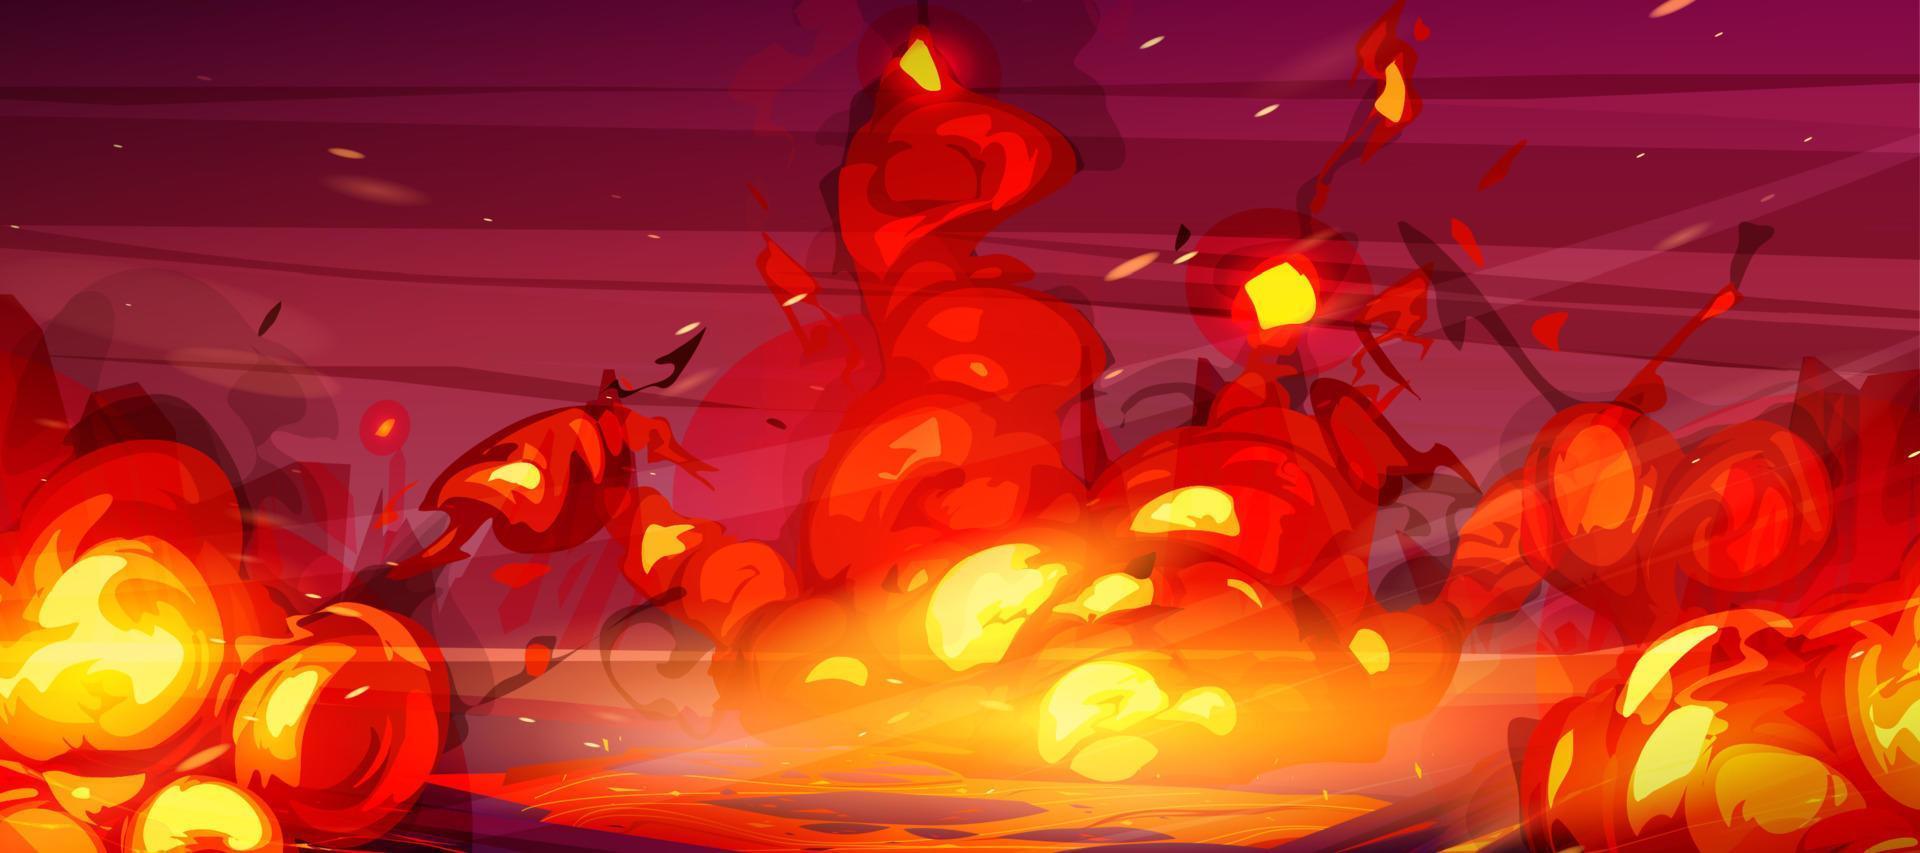 Feuerhintergrund, Explosion der roten Bombe der Karikatur vektor